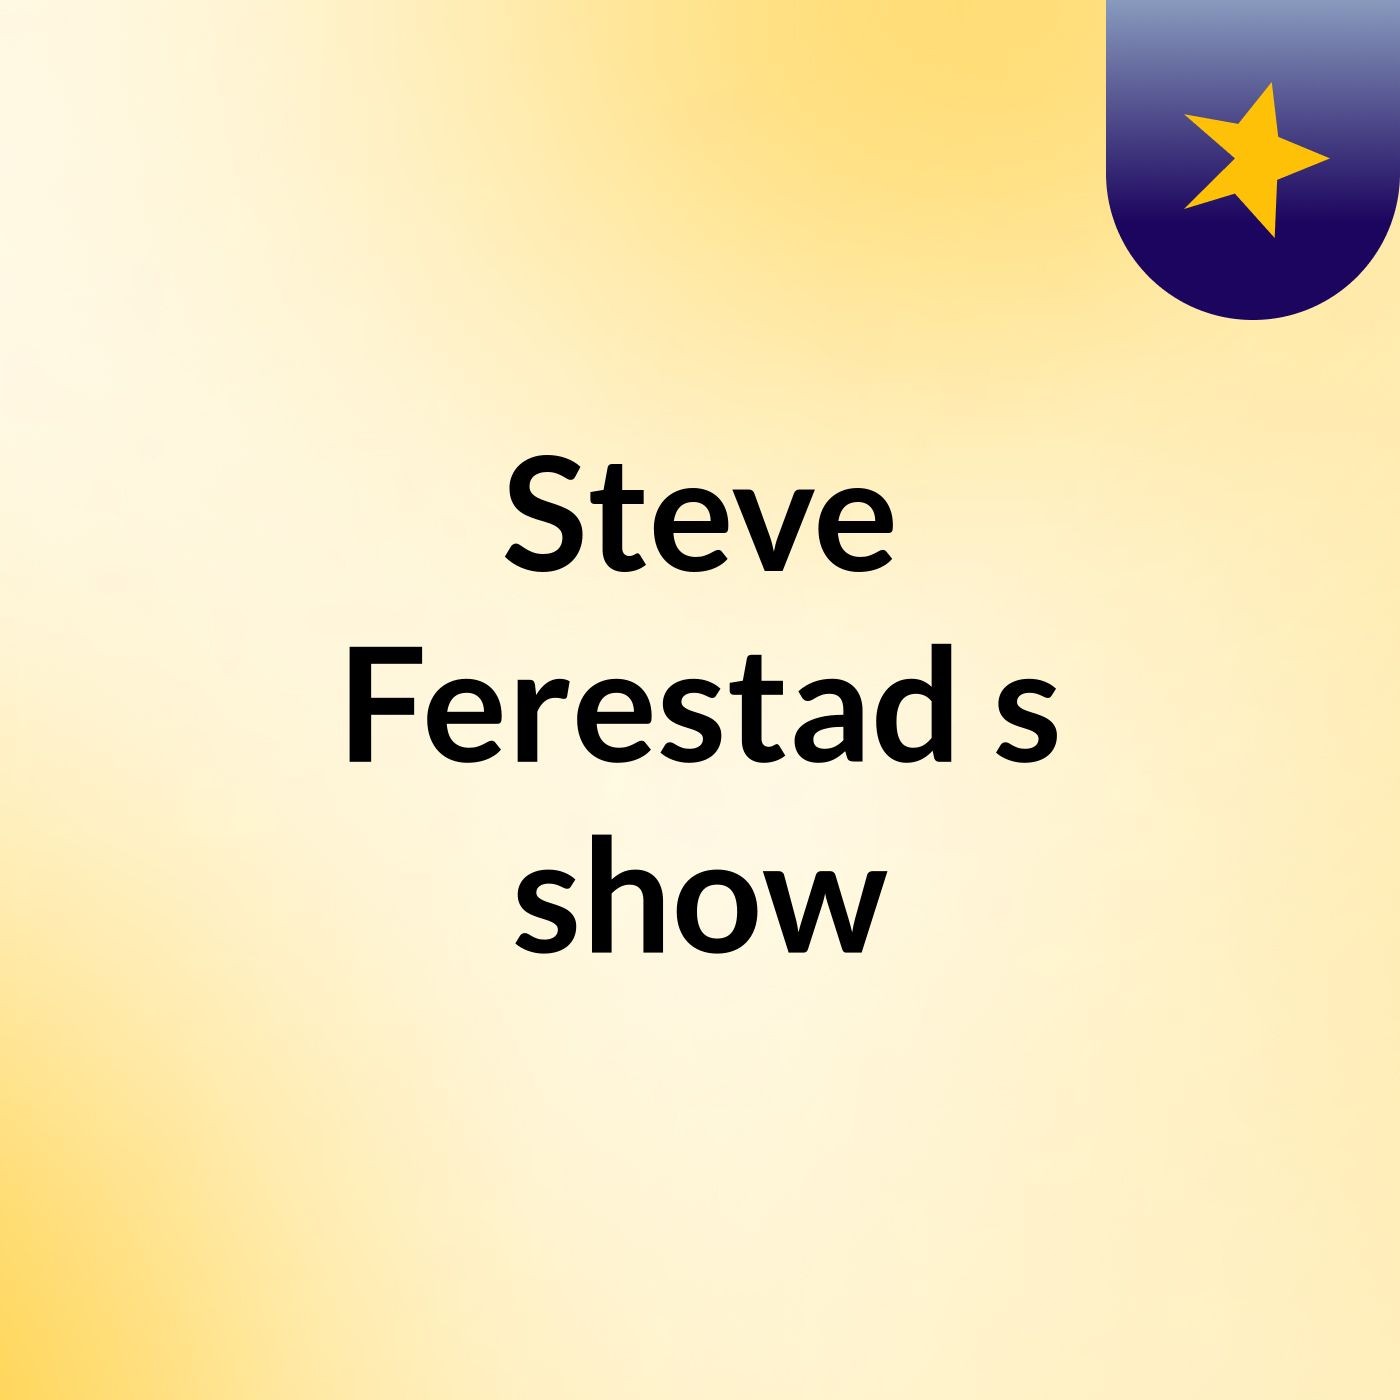 Episode 7 - Steve Ferestad's show